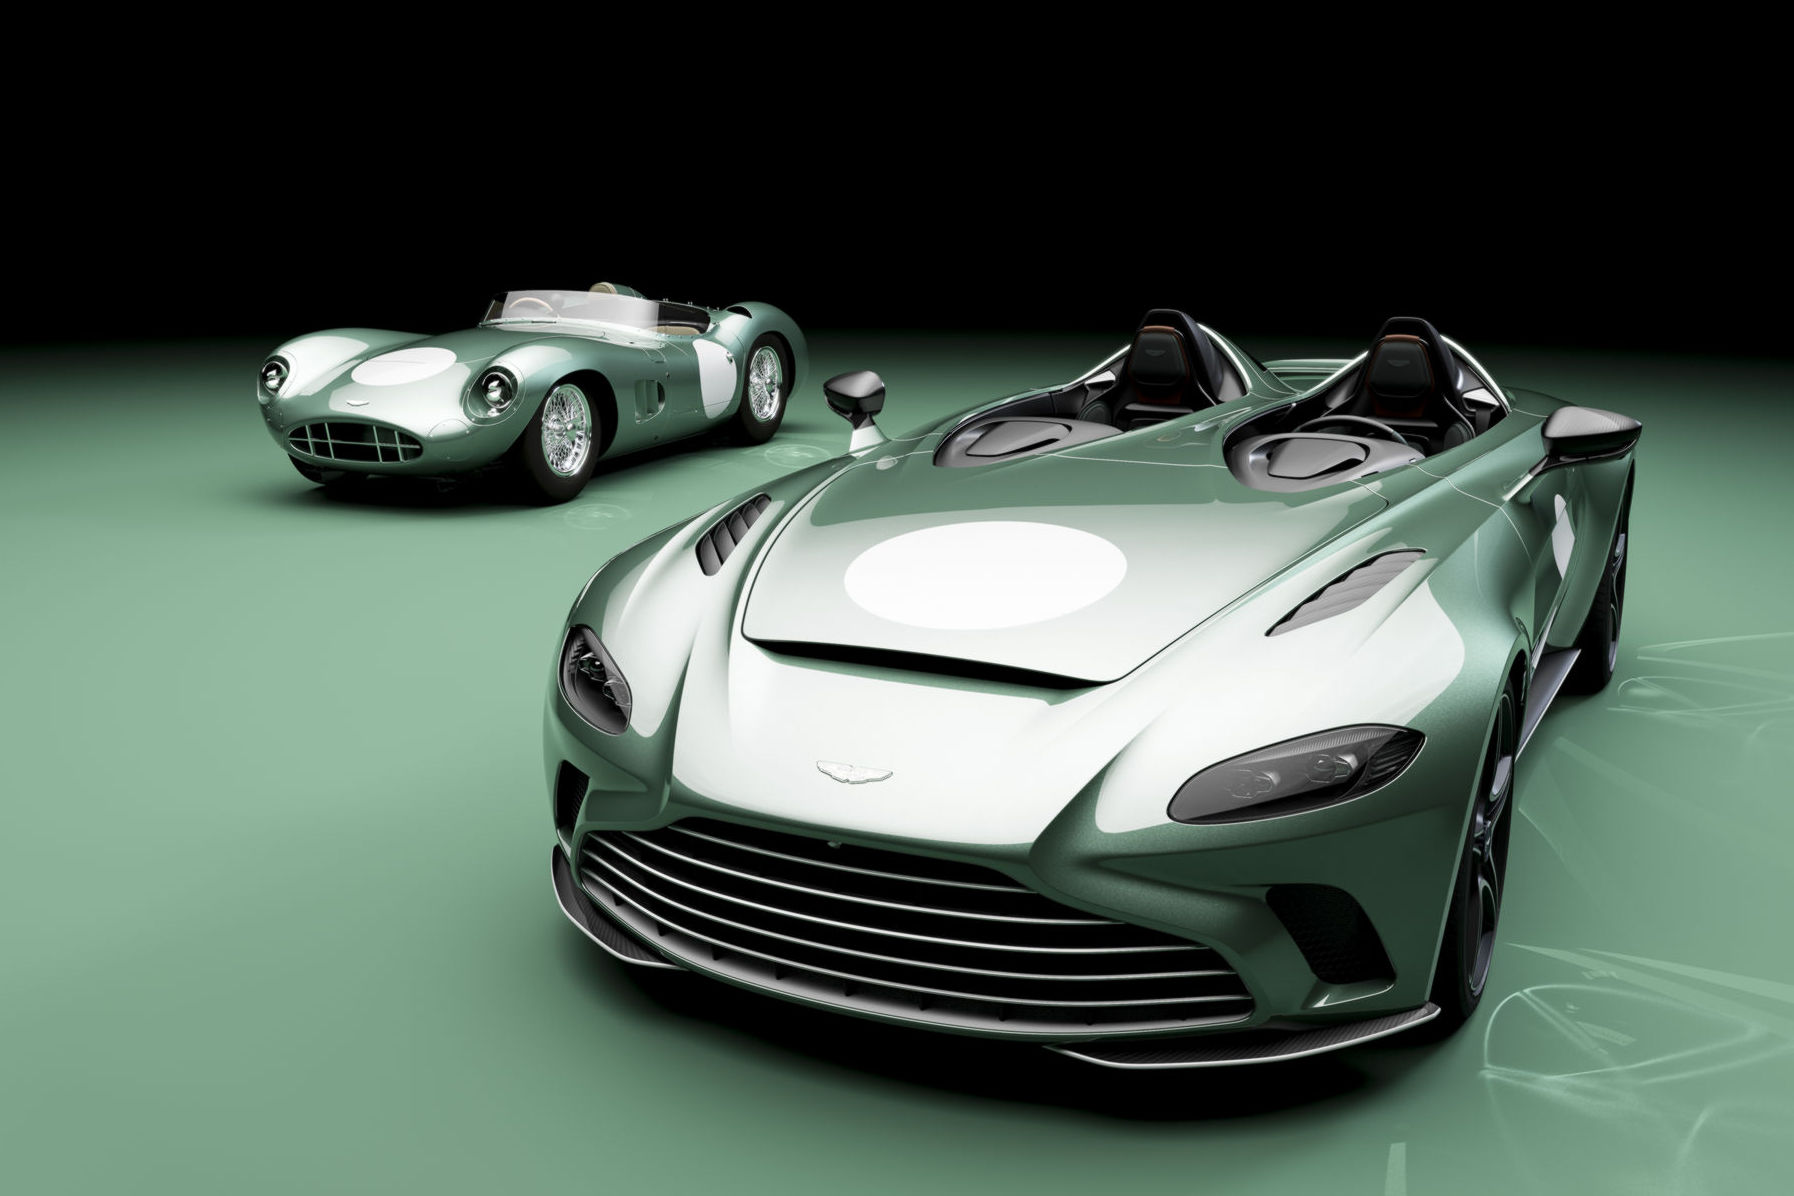 A legdrágább brit autóra hasonlít ez az Aston Martin 3